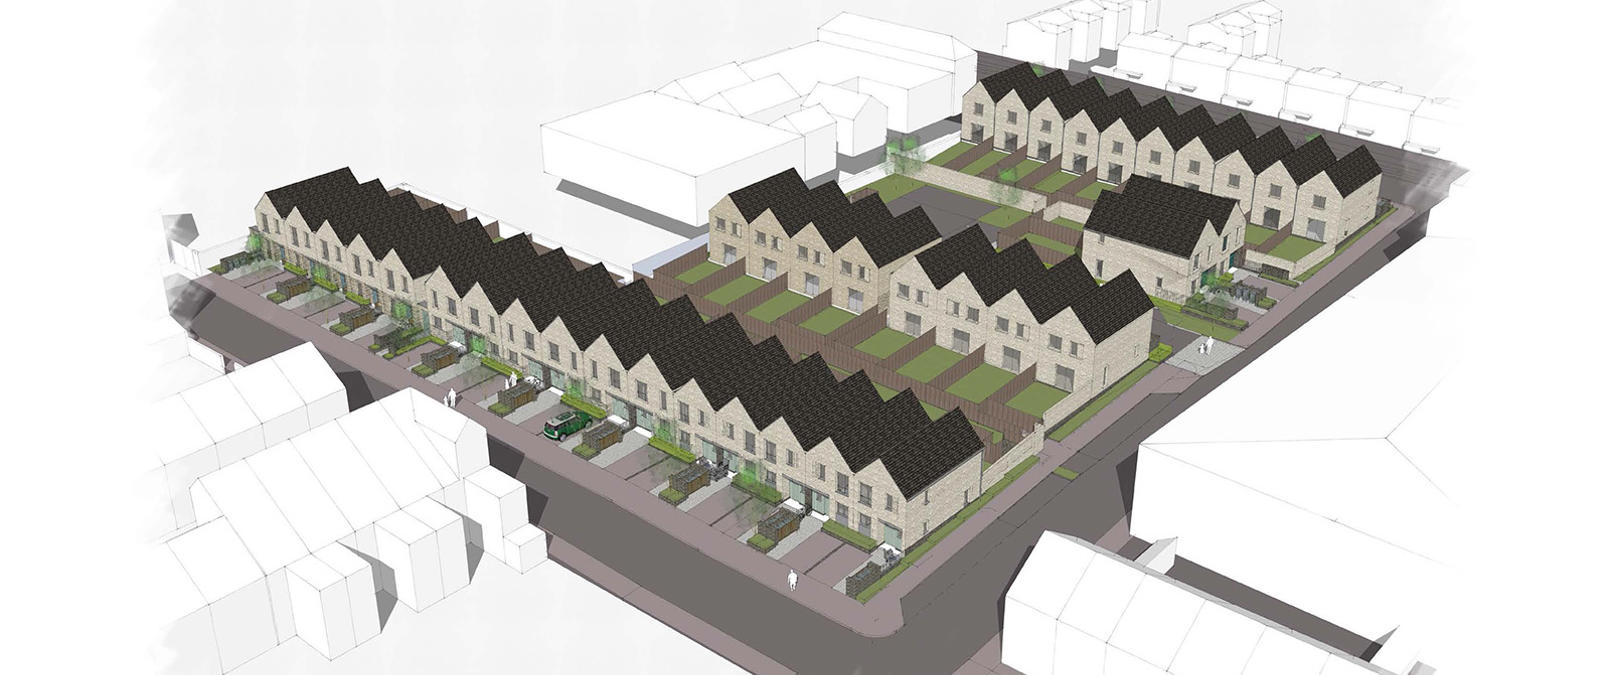 Site Plan Prospect Place Lenton Development Small